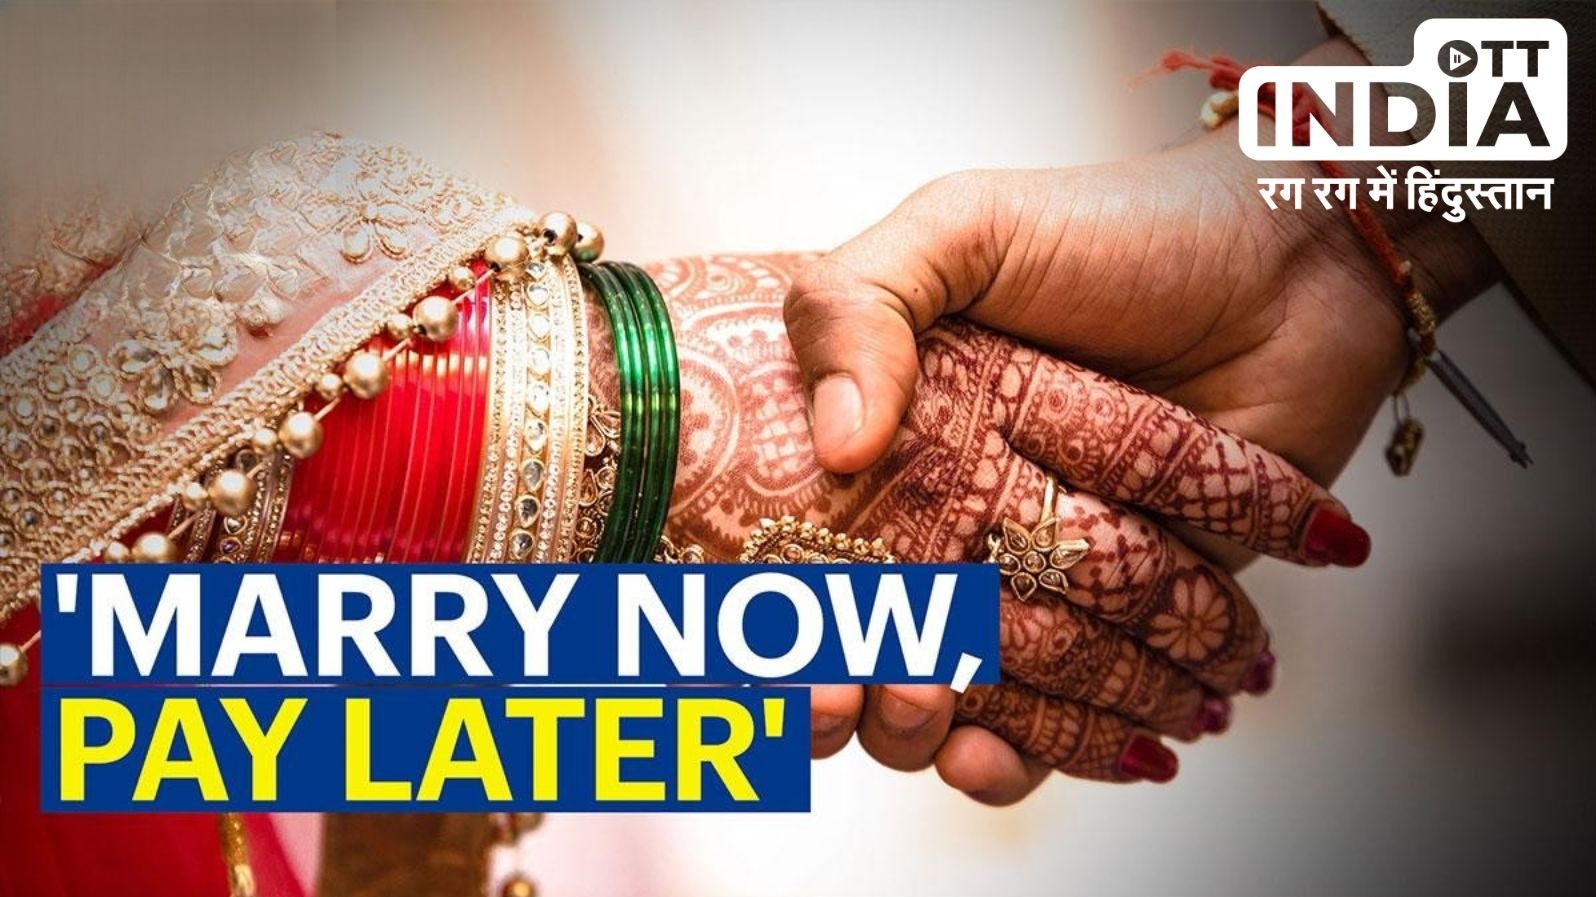 टेंशन फ्री होकर करे शादी, खर्च की चिंता ख़त्म! जानिए ‘Marry Now, Pay Later’ सुविधा